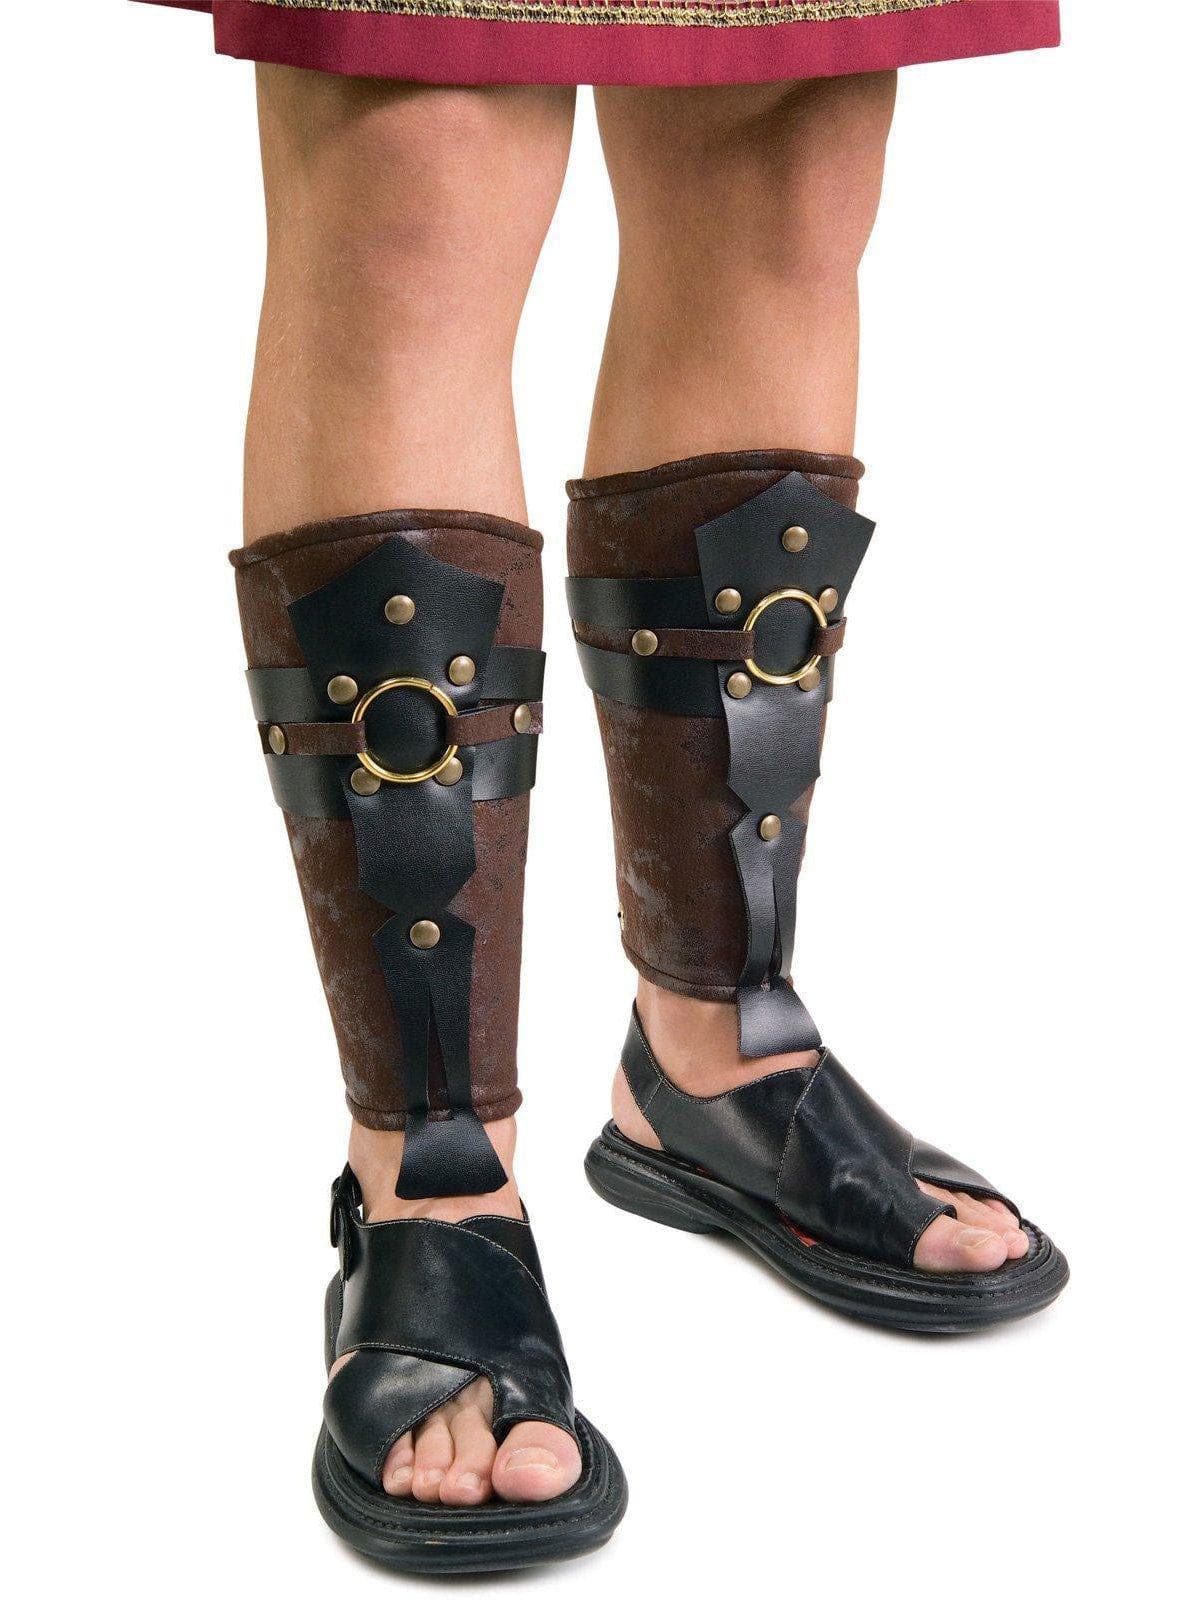 Men's Roman Leg Guards - costumes.com